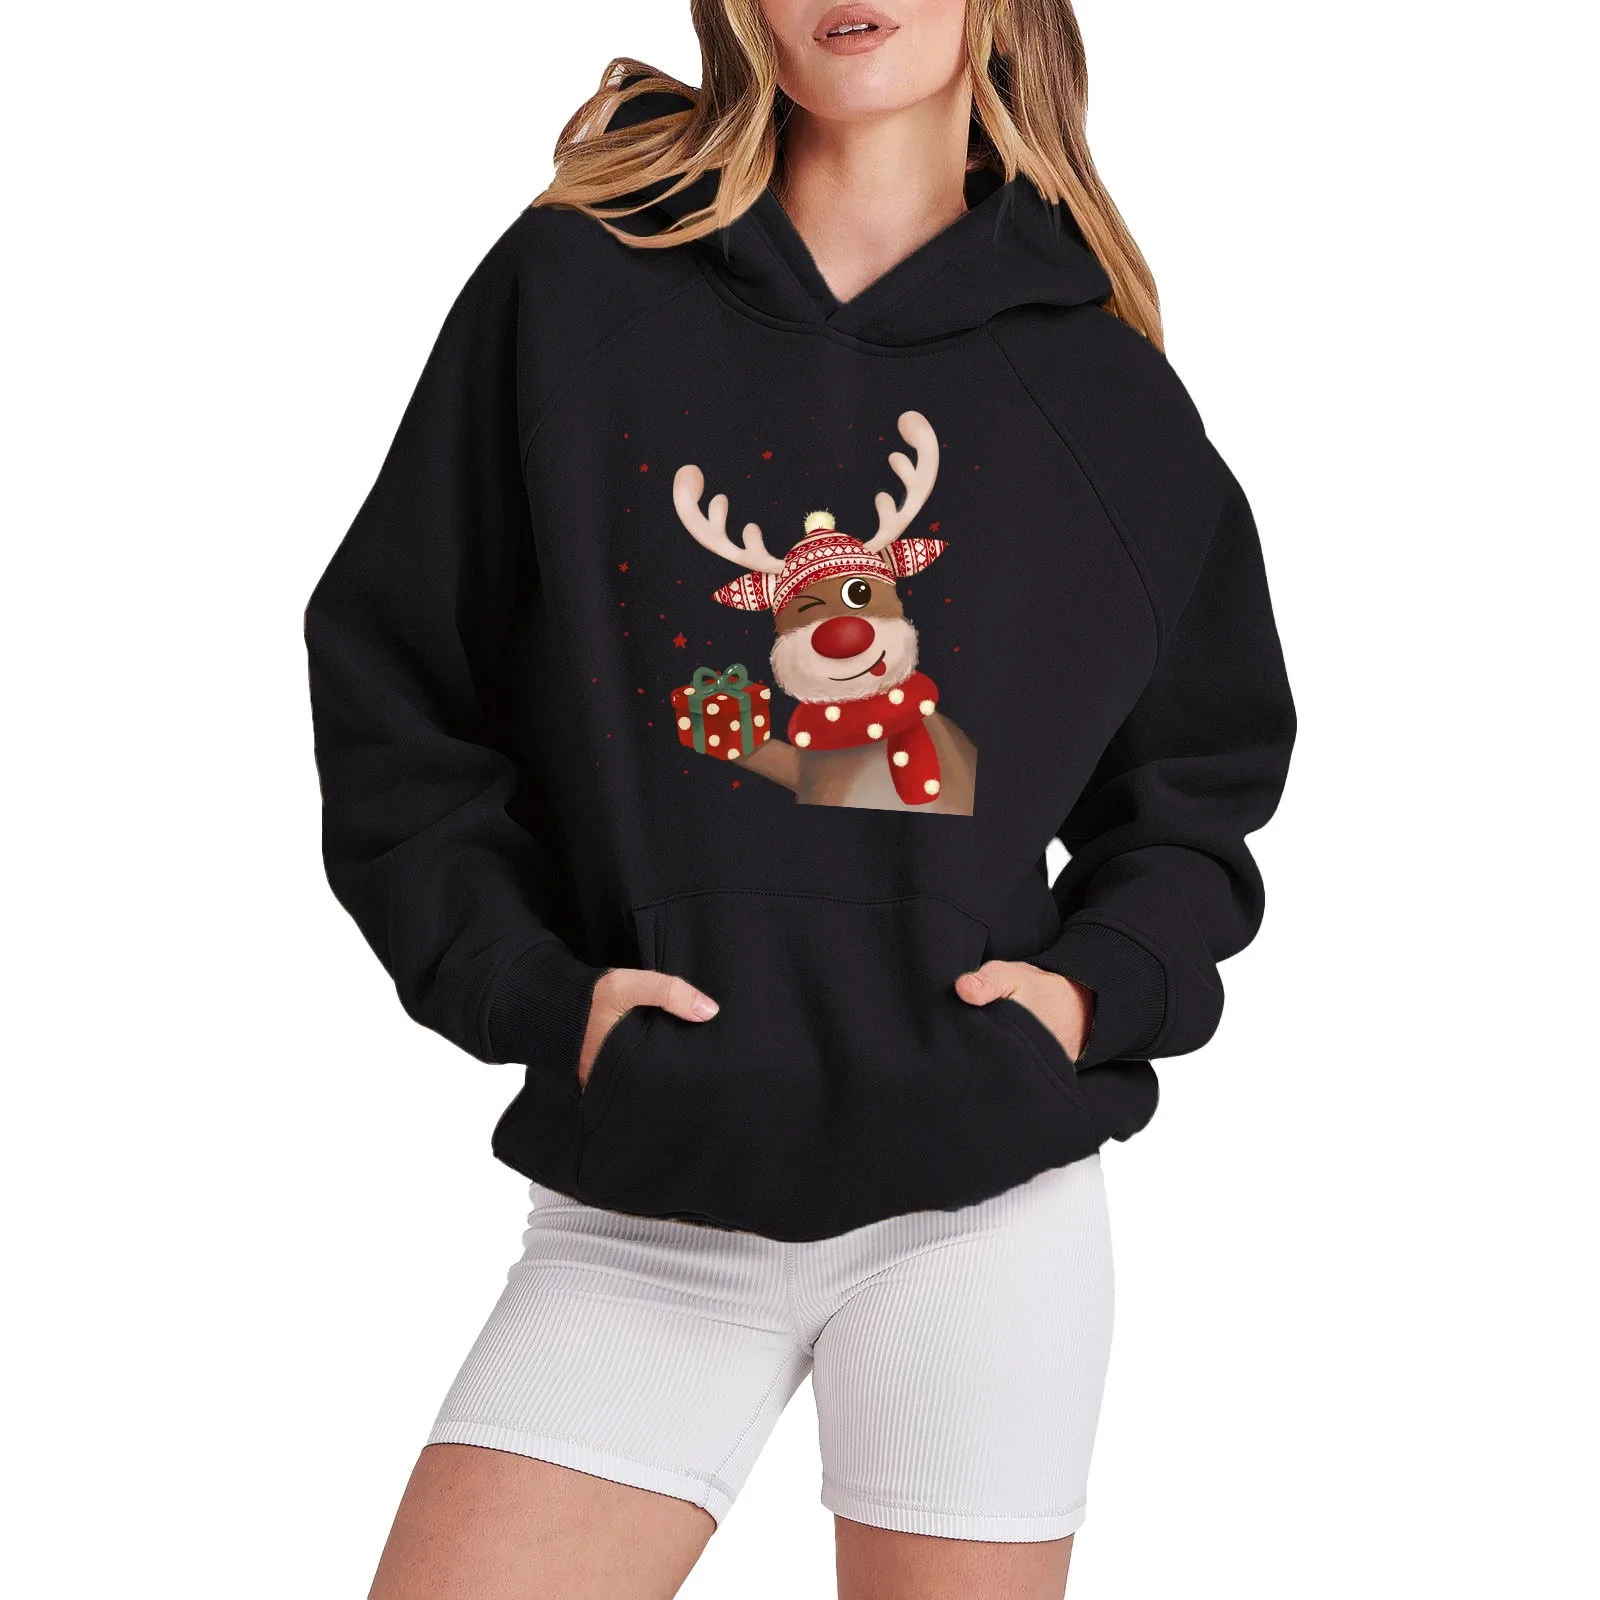 

Merry Christmas Graphic Hoodies Sweatshirt Women Christmas Long Raglan Sleeve Snowflake Santa Tree Hat Hooded Sweater Tops